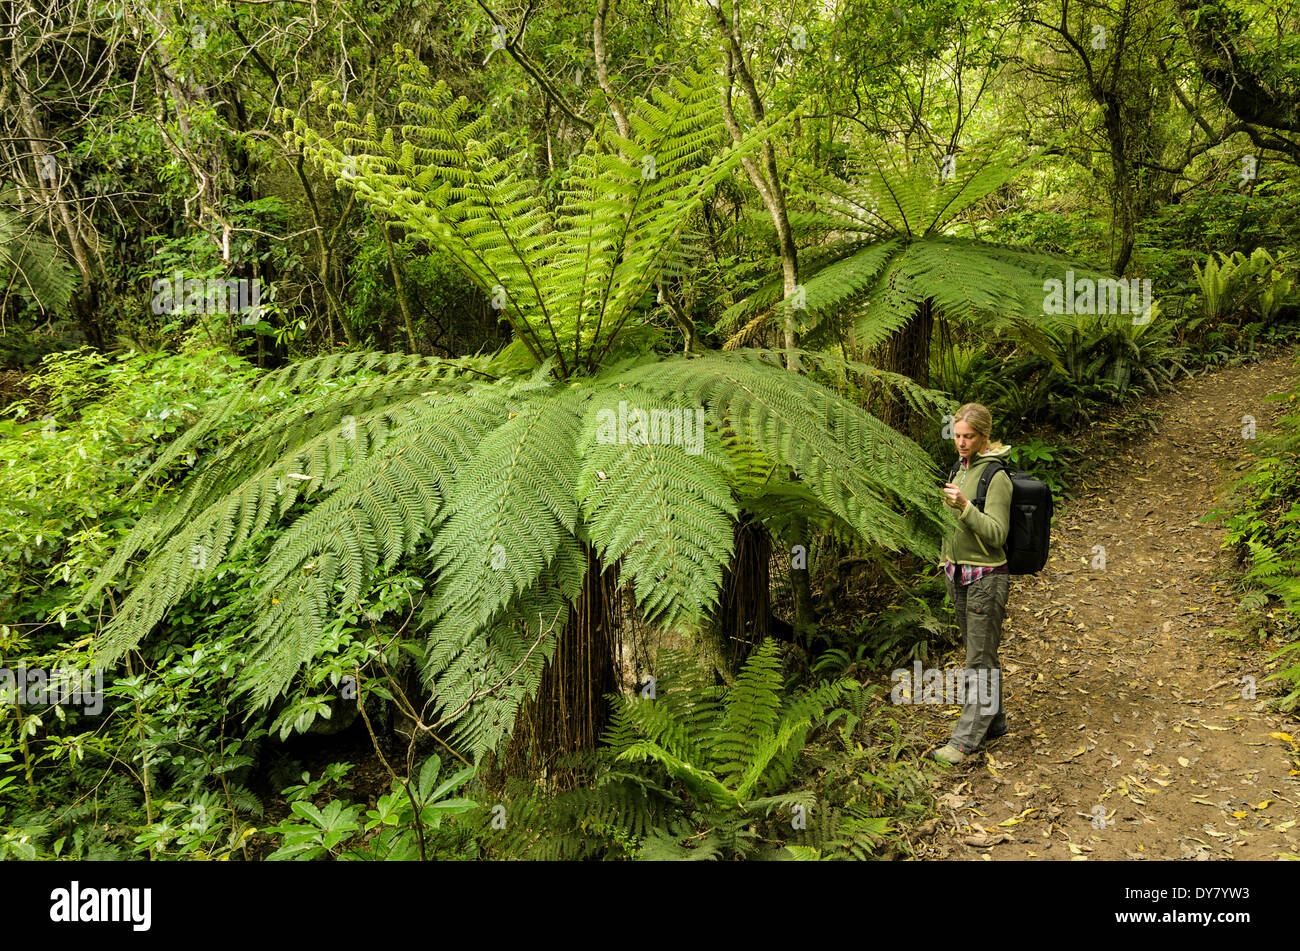 Femme regarde une fronde d'une fougère arborescente (Cyatheales), sentier de randonnée pédestre à travers la forêt primaire, l'Île du Nord, Nouvelle-Zélande Banque D'Images